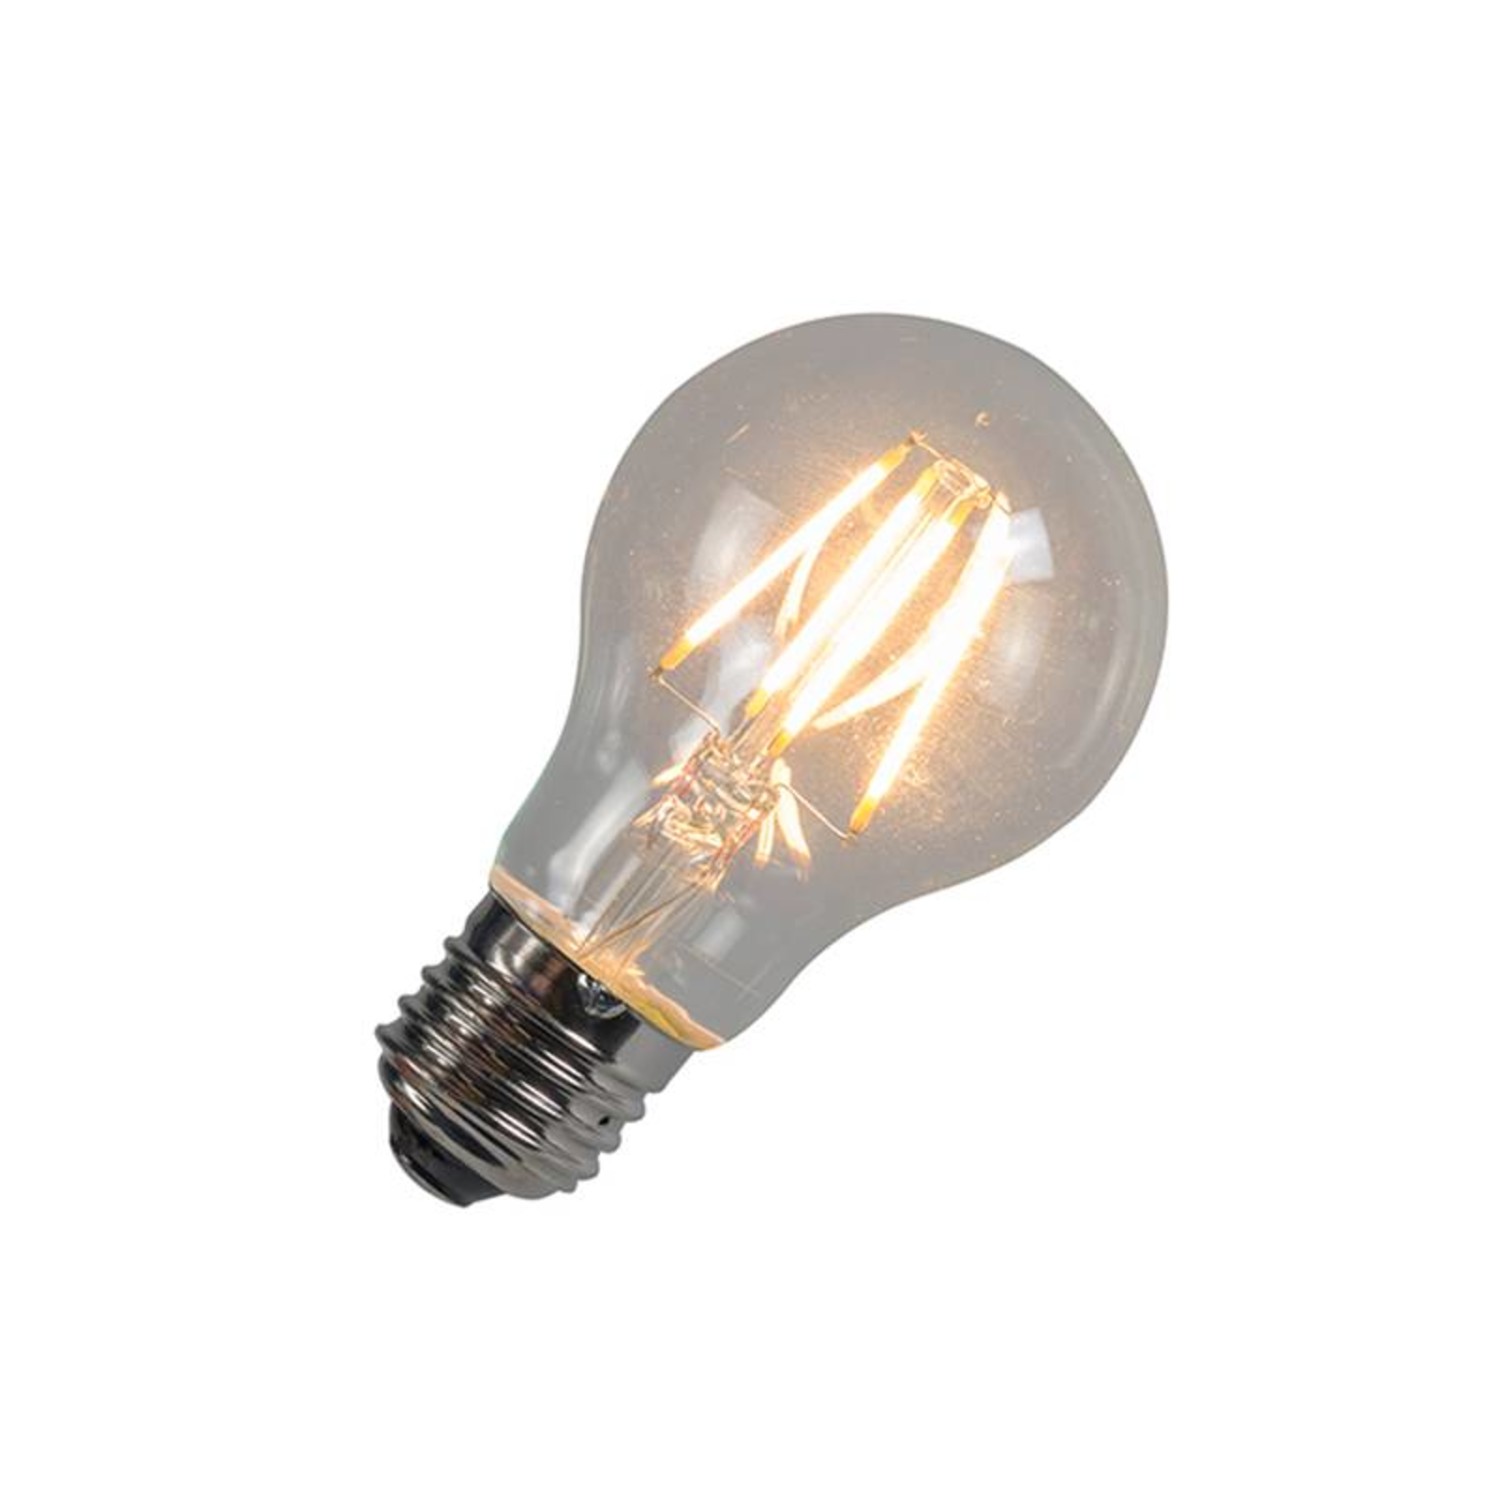 Moment Refrein Verklaring LED E27 lamp 25-2 Watt filament - Lamponline.nl